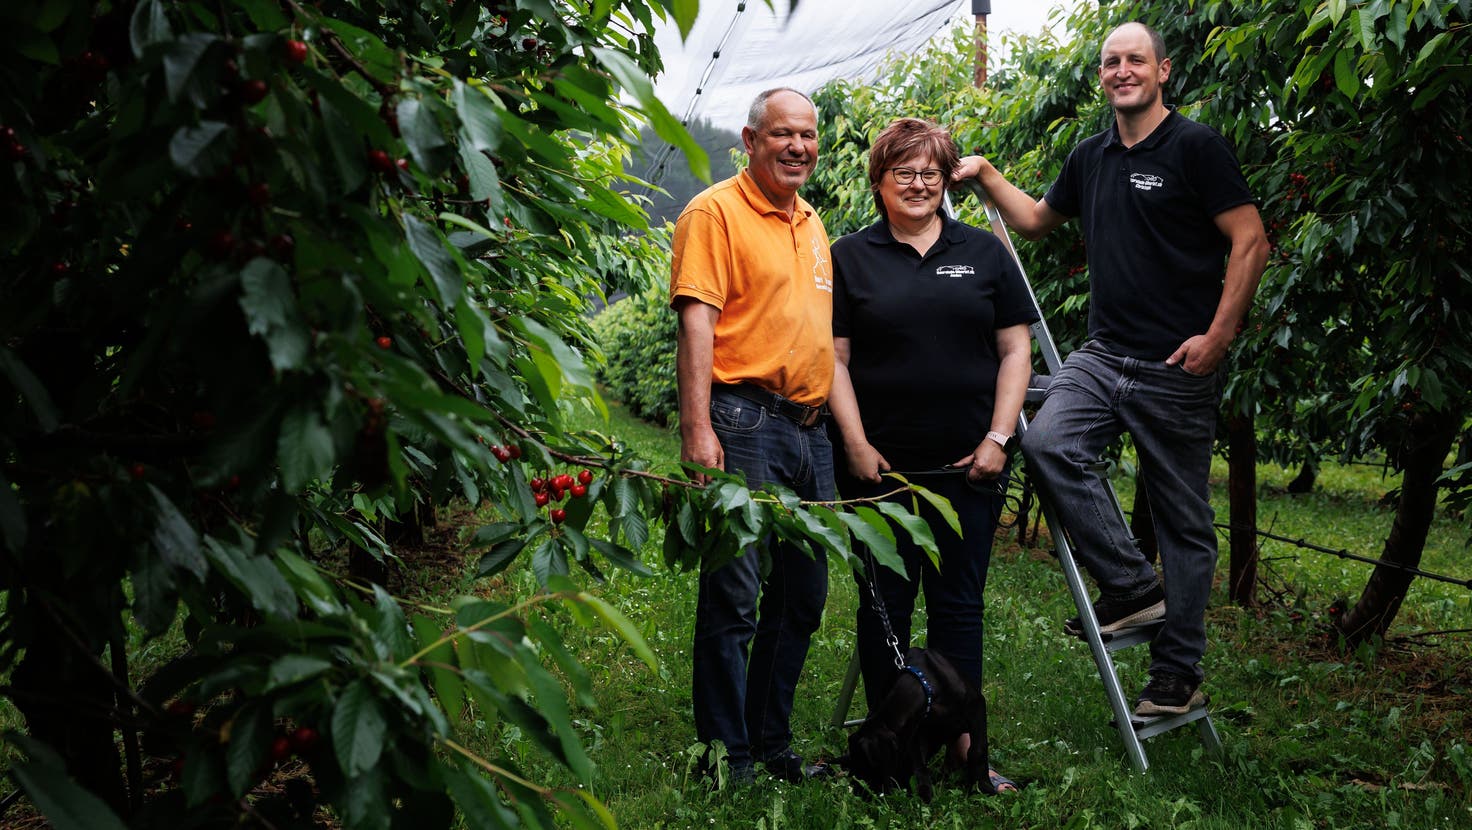 Begerts sind die grössten Obstproduzenten im Kanton Solothurn (von links): Markus Heri, Janine Heri mit Hund Milo, Christoph Begert (Hanspeter Bärtschi)